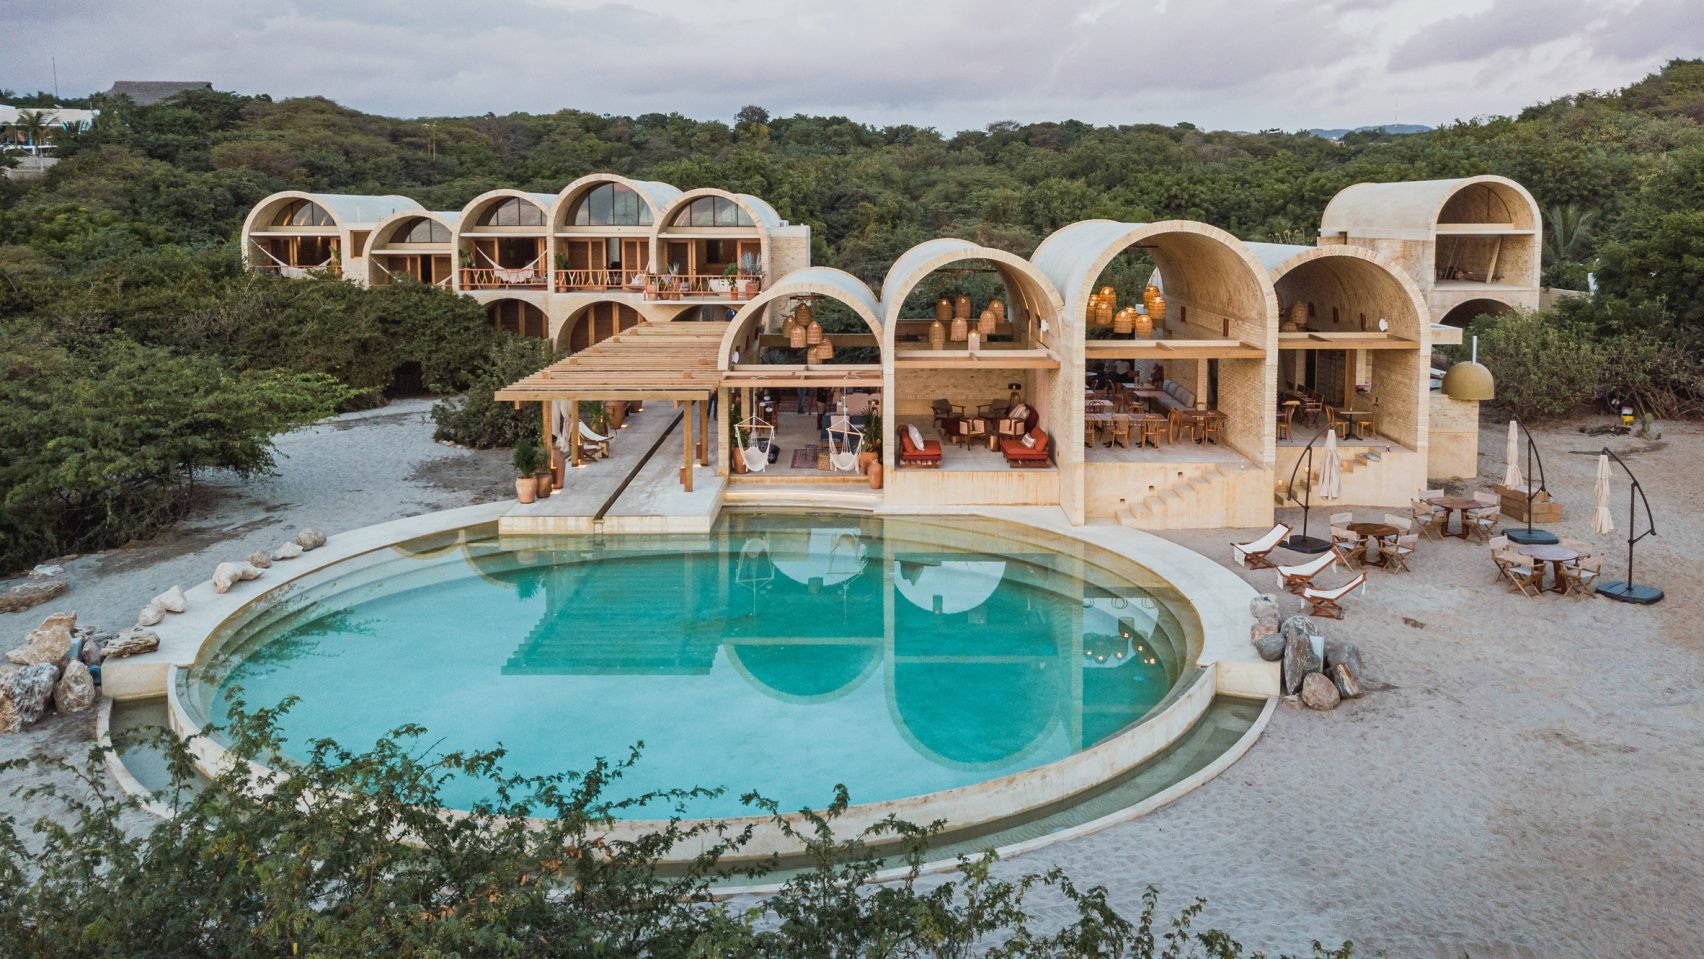 Resort en Mexico Oaxaca de hormigon con una piscina redonda exterior